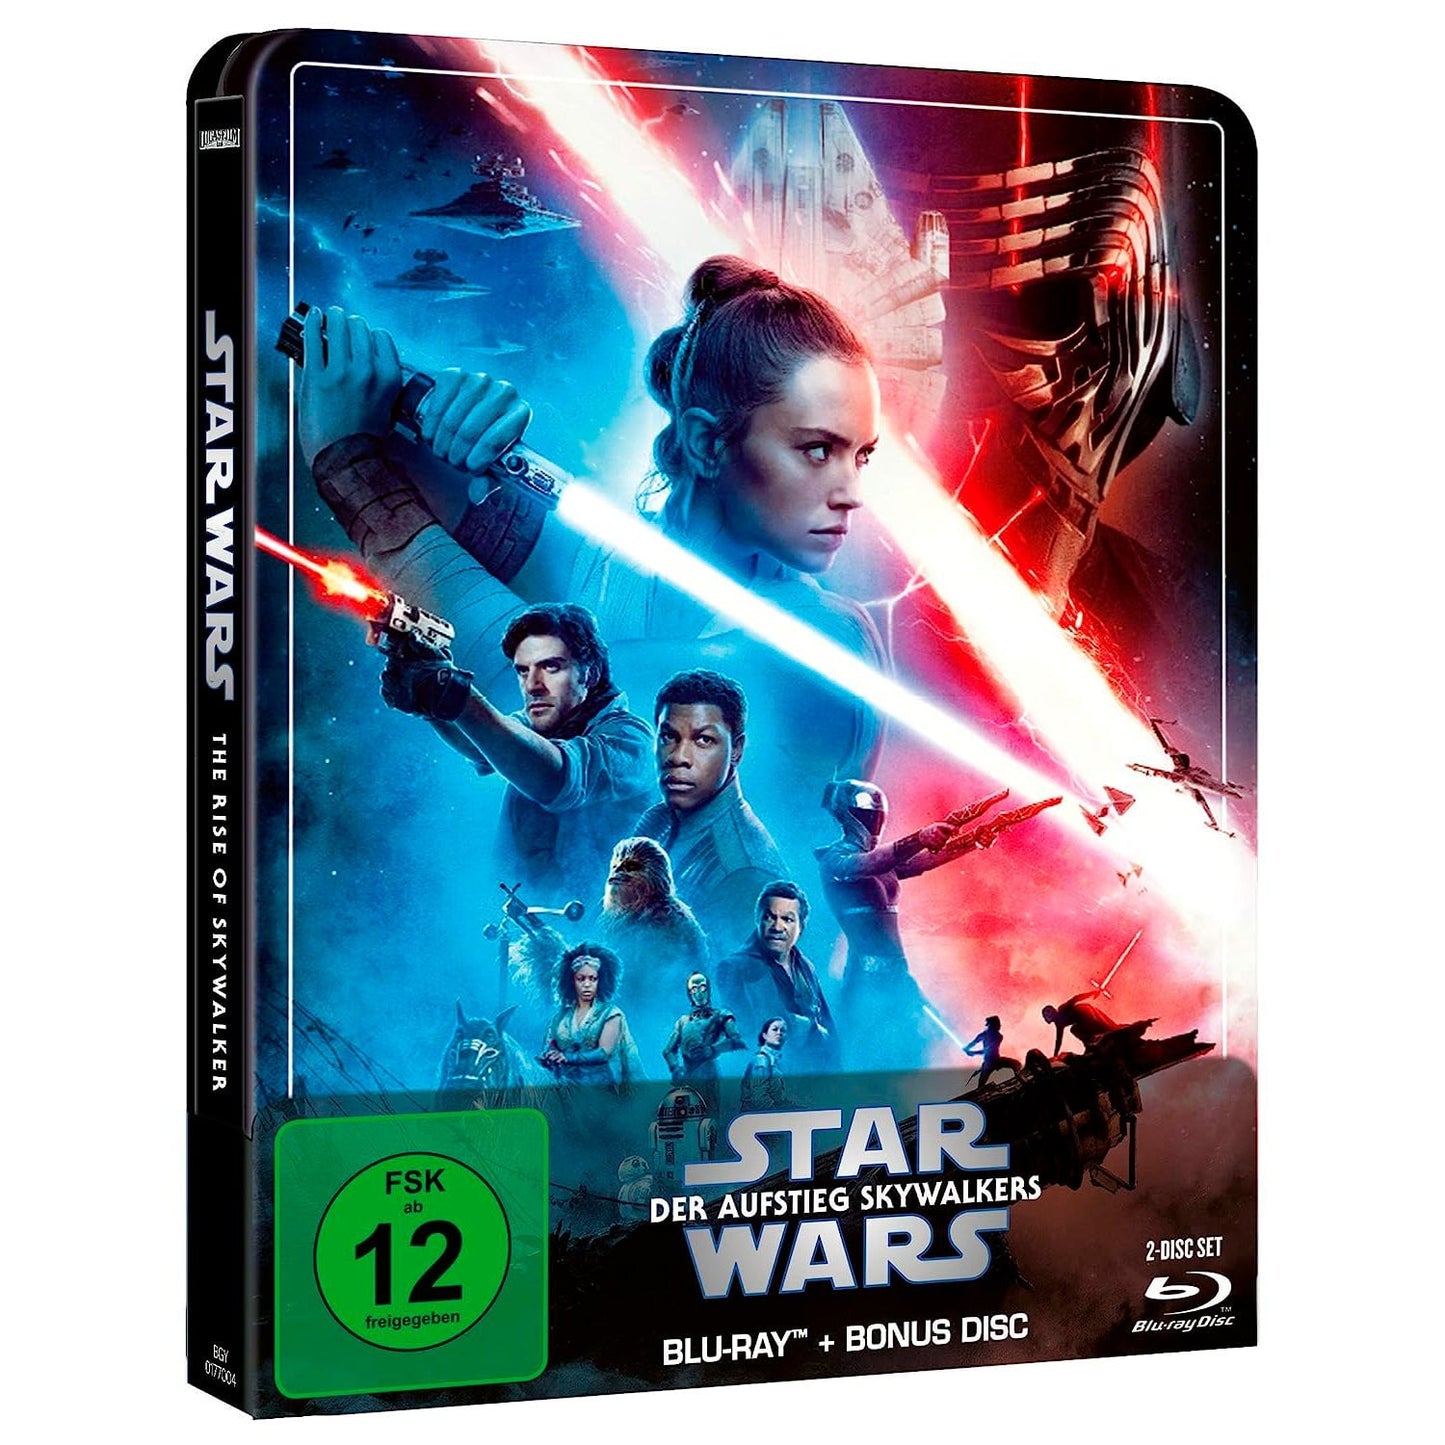 Звёздные войны: Эпизод IX - Скайуокер. Восход (англ. язык) (Blu-ray + Бонусный диск) Steelbook